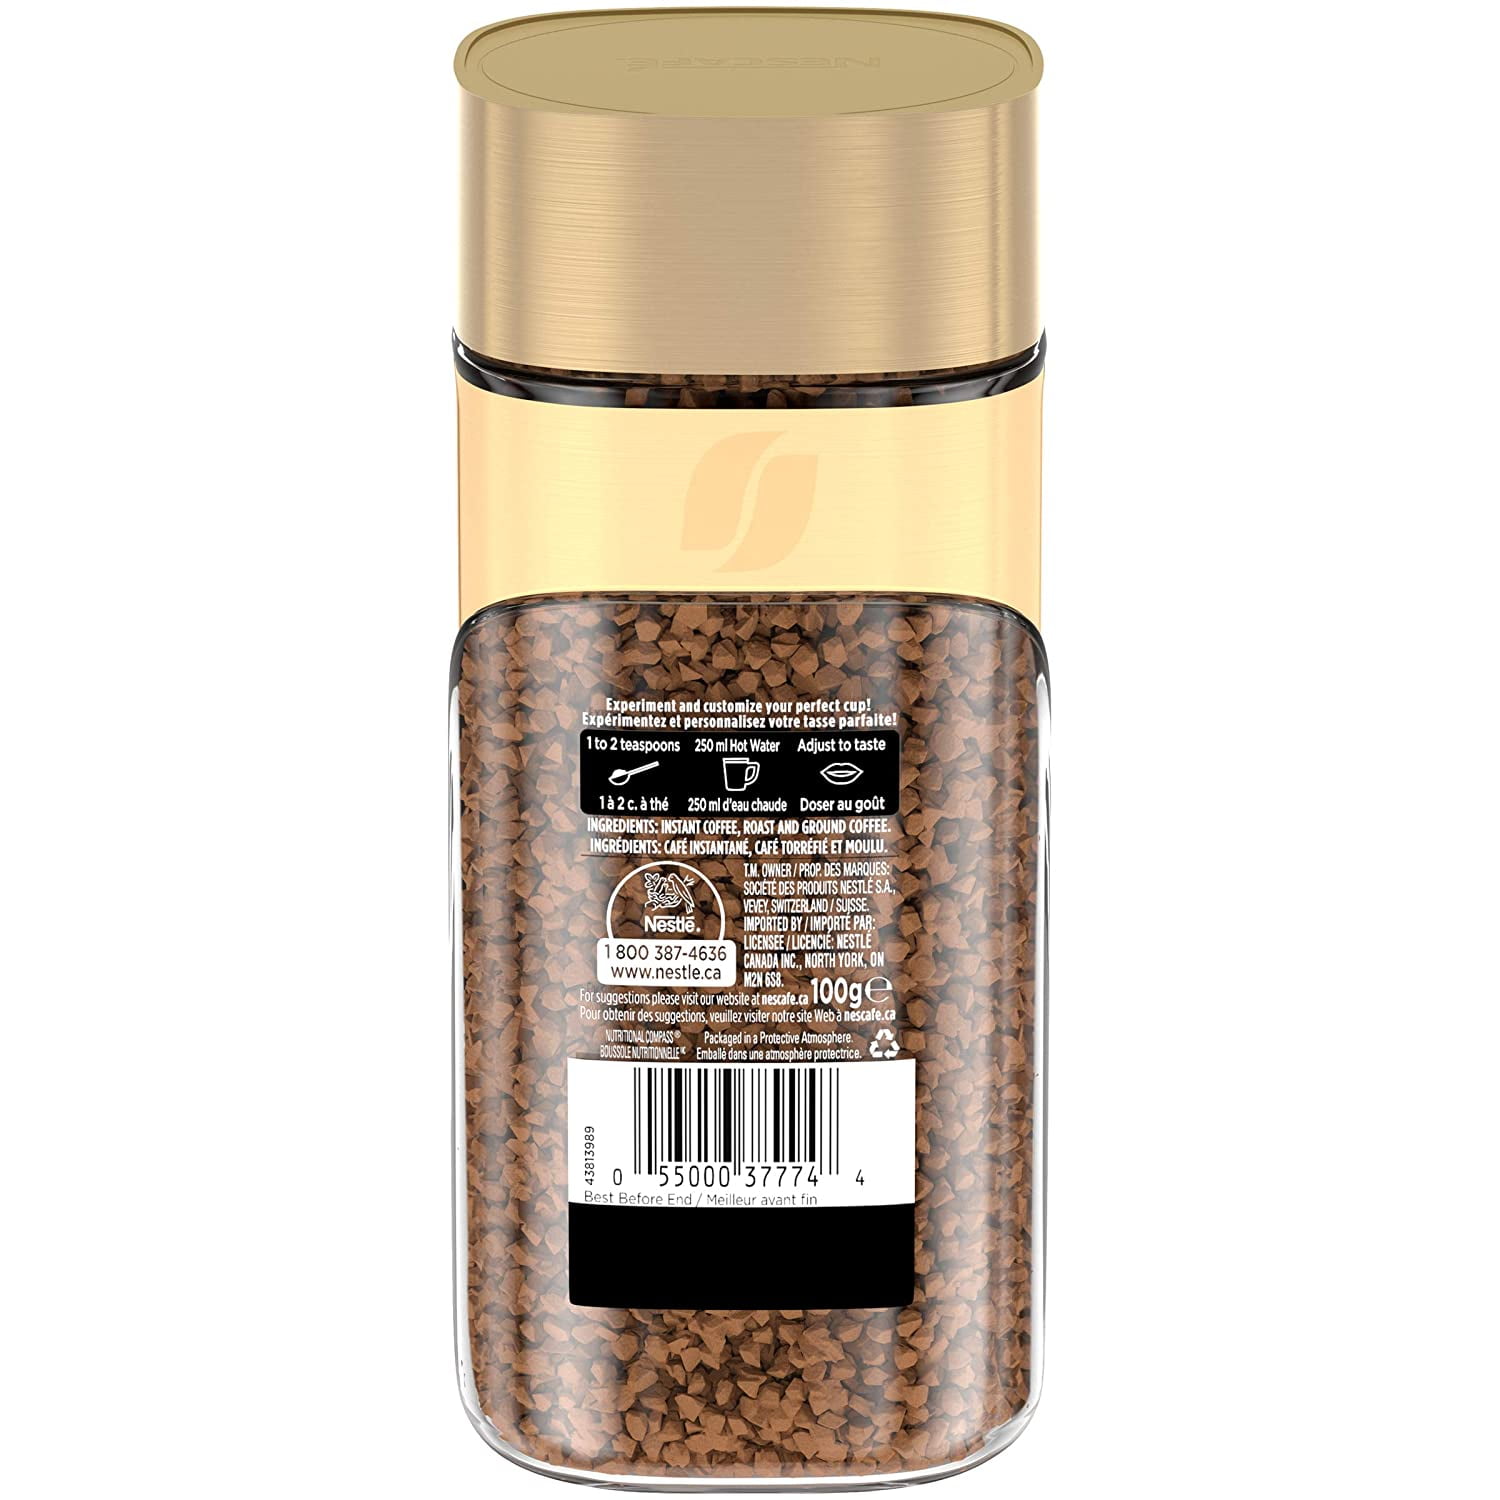 NESCAF Gold Medium Roast Instant Coffee, 100g Jar